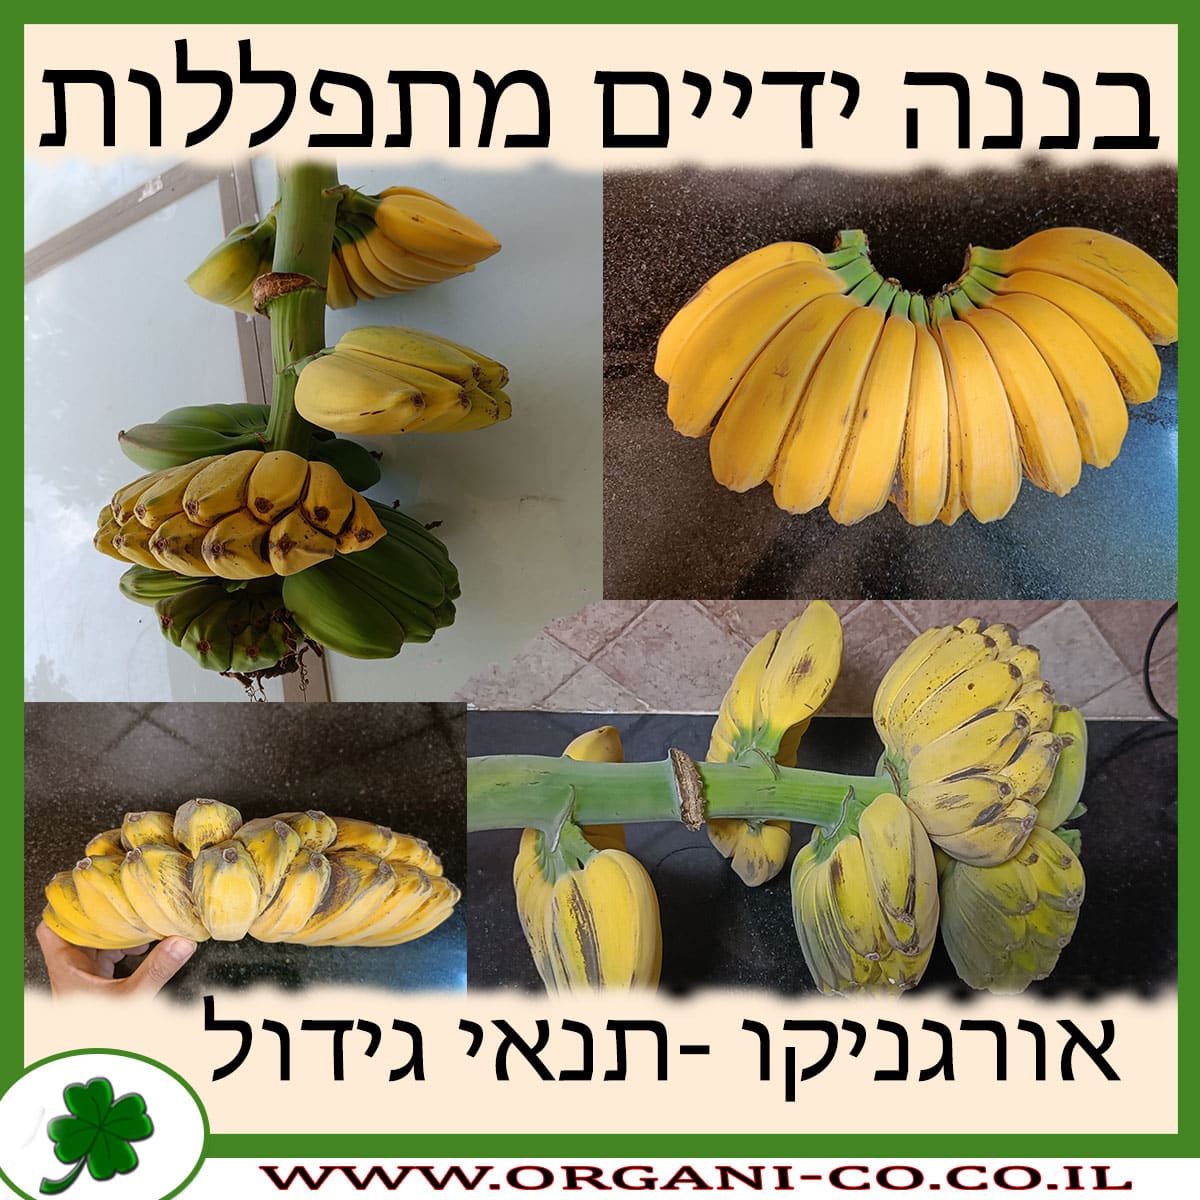 בננה ידיים מתפללות תנאי גידול